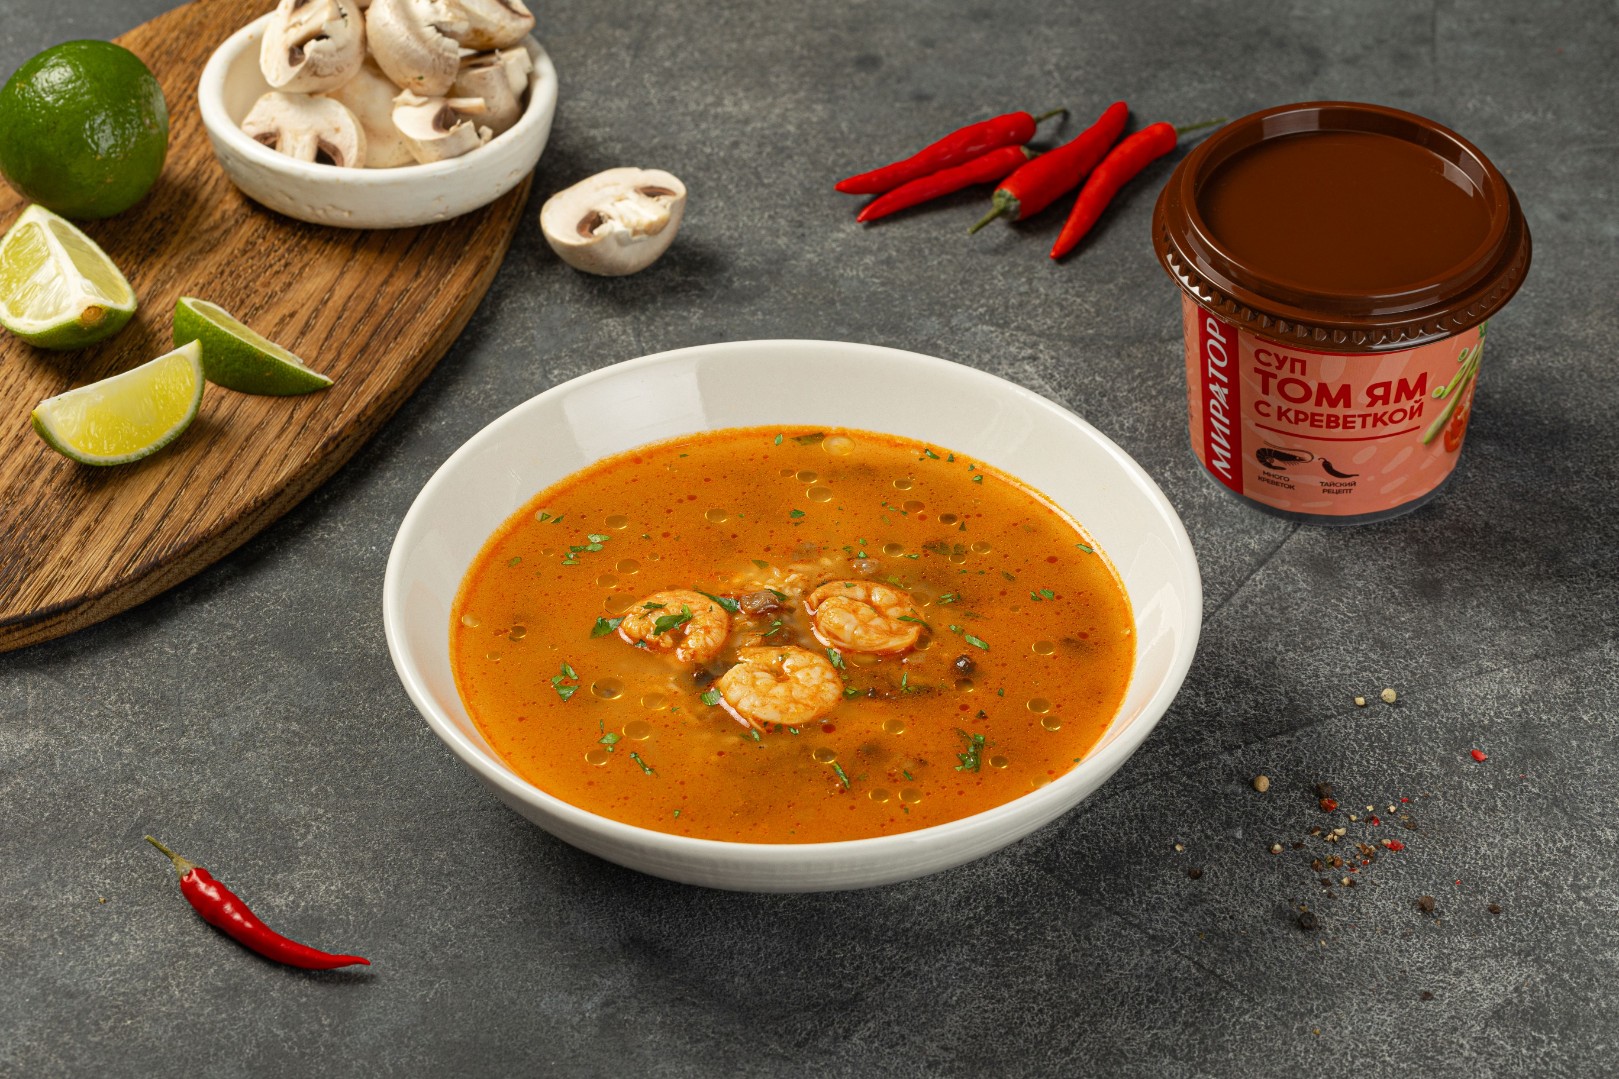 Компания «Мираторг» представила две новых разновидности готовых супов